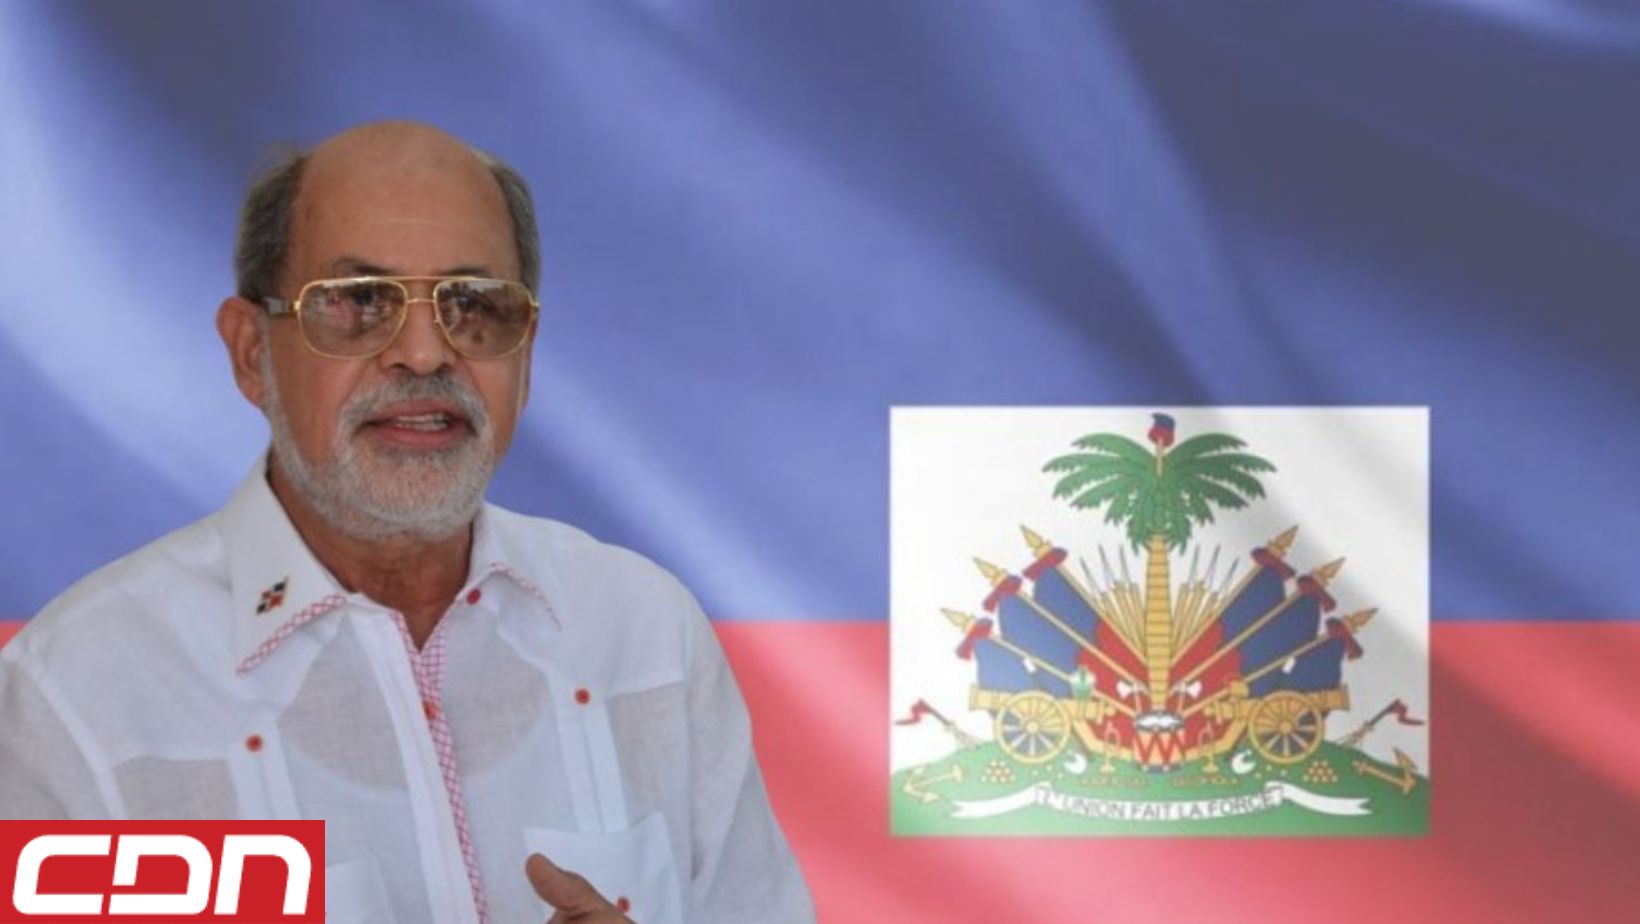 Embajador dominicano en Haití fue convocado por la cancilleria haitiana tras el cierre de frontera